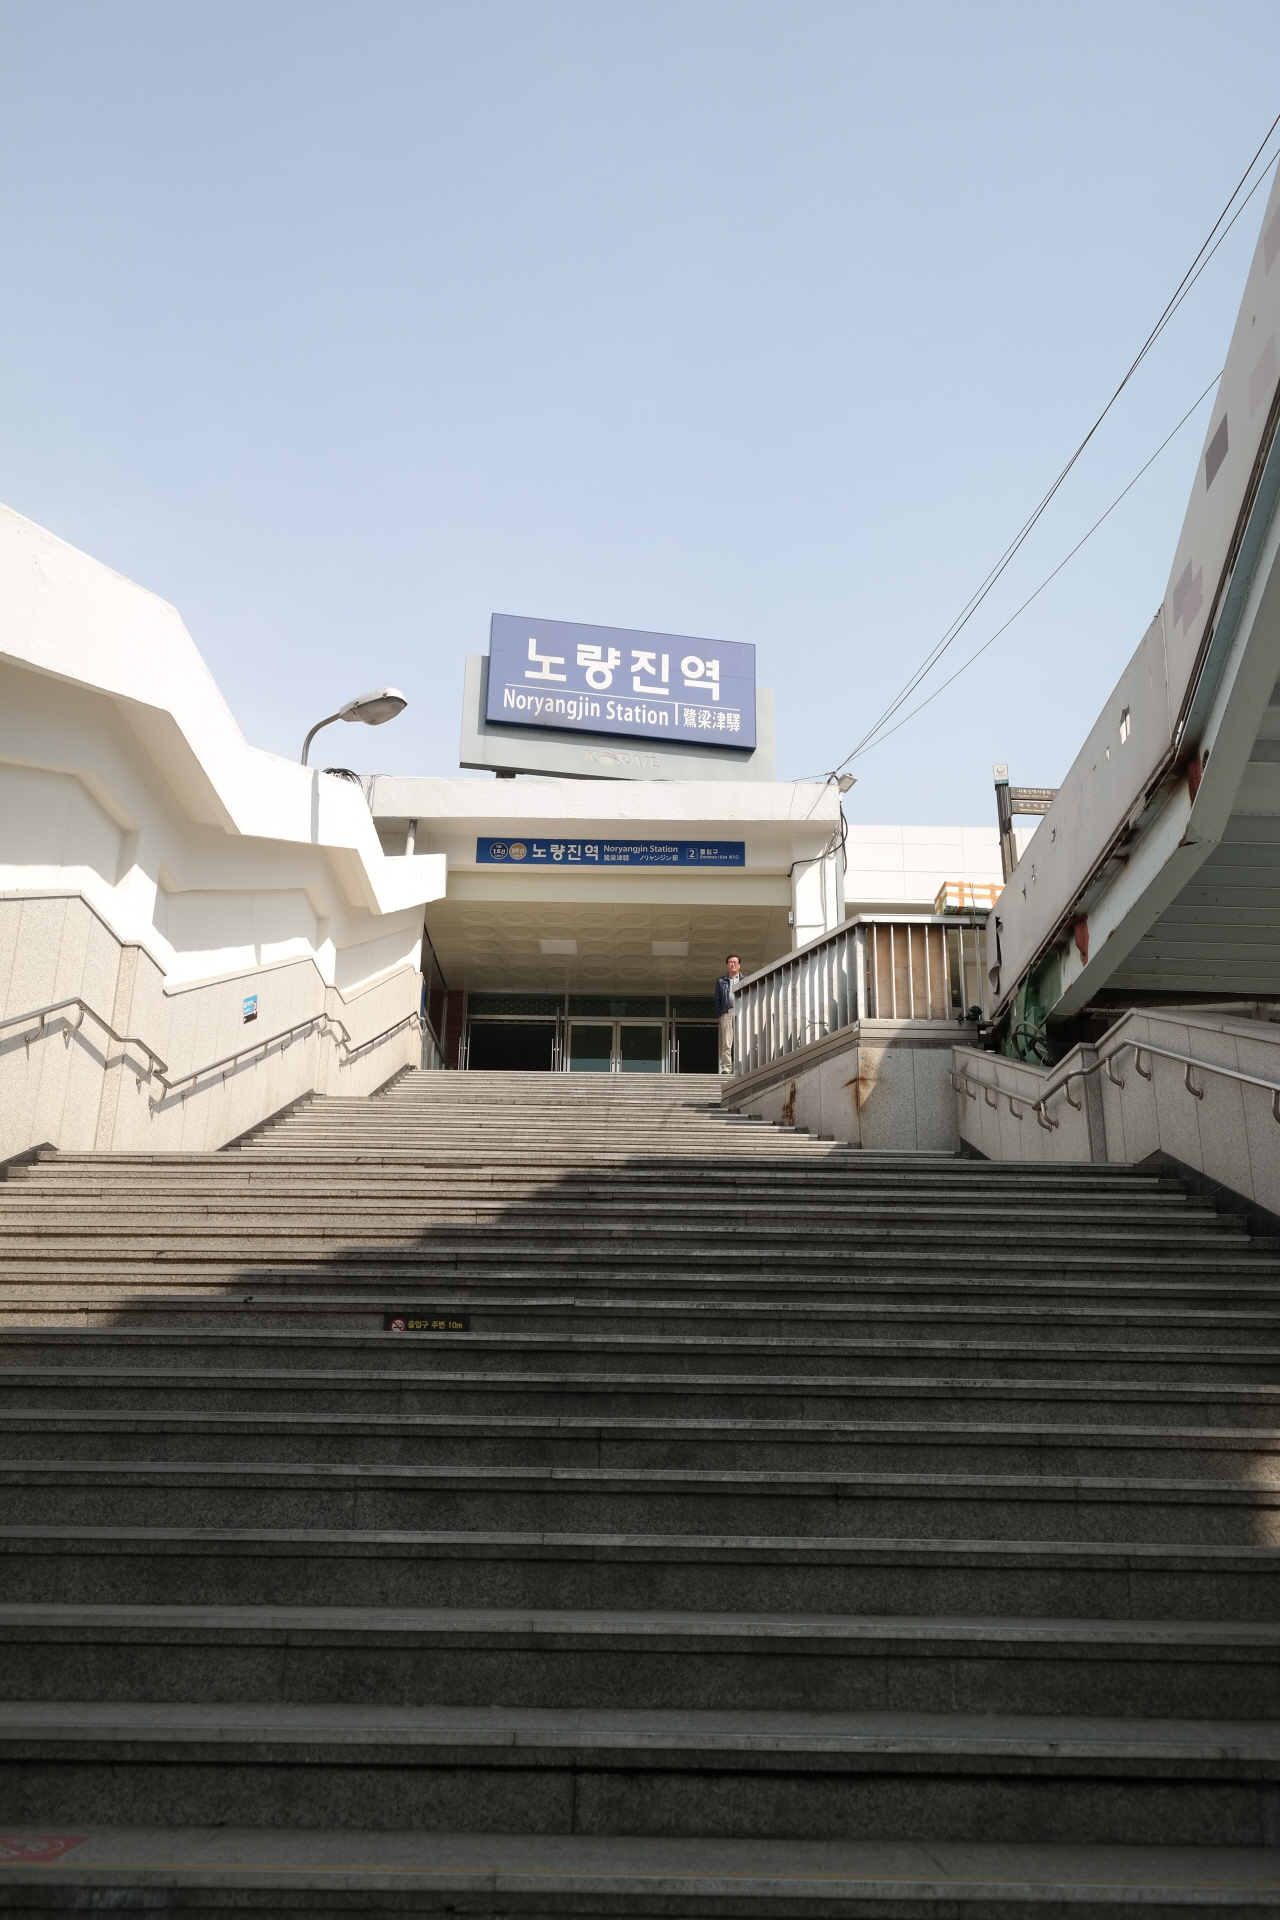 지난 3월 23일 오후 서울 지하철 1호선 노량진역사와 연결된 계단이 몹시 한산하다.